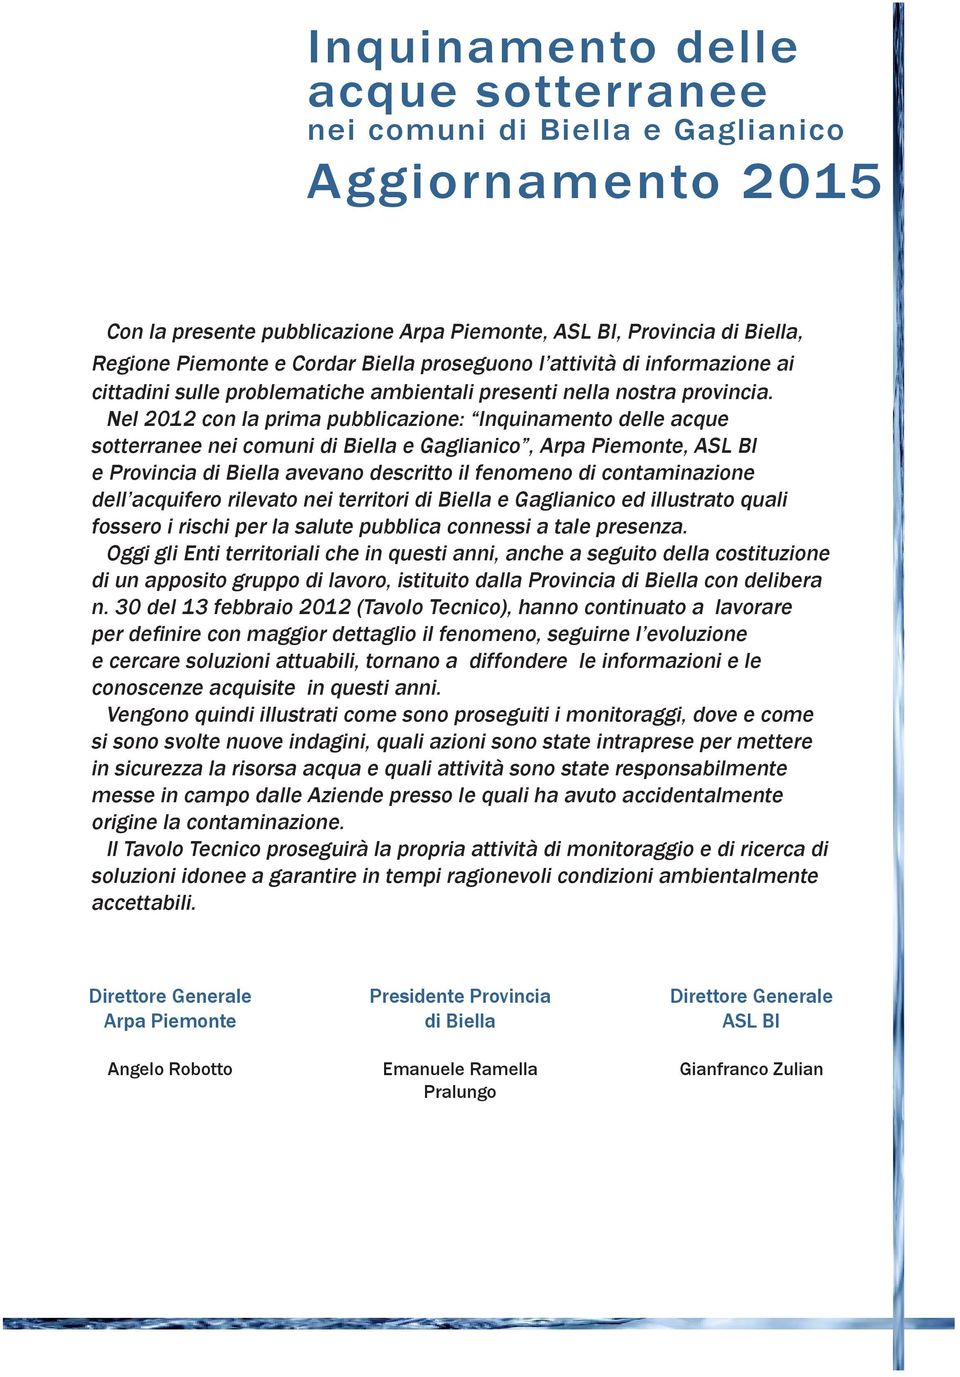 Nel 2012 con la prima pubblicazione: Inquinamento delle acque sotterranee nei comuni di Biella e Gaglianico, Arpa Piemonte, ASL BI e Provincia di Biella avevano descritto il fenomeno di